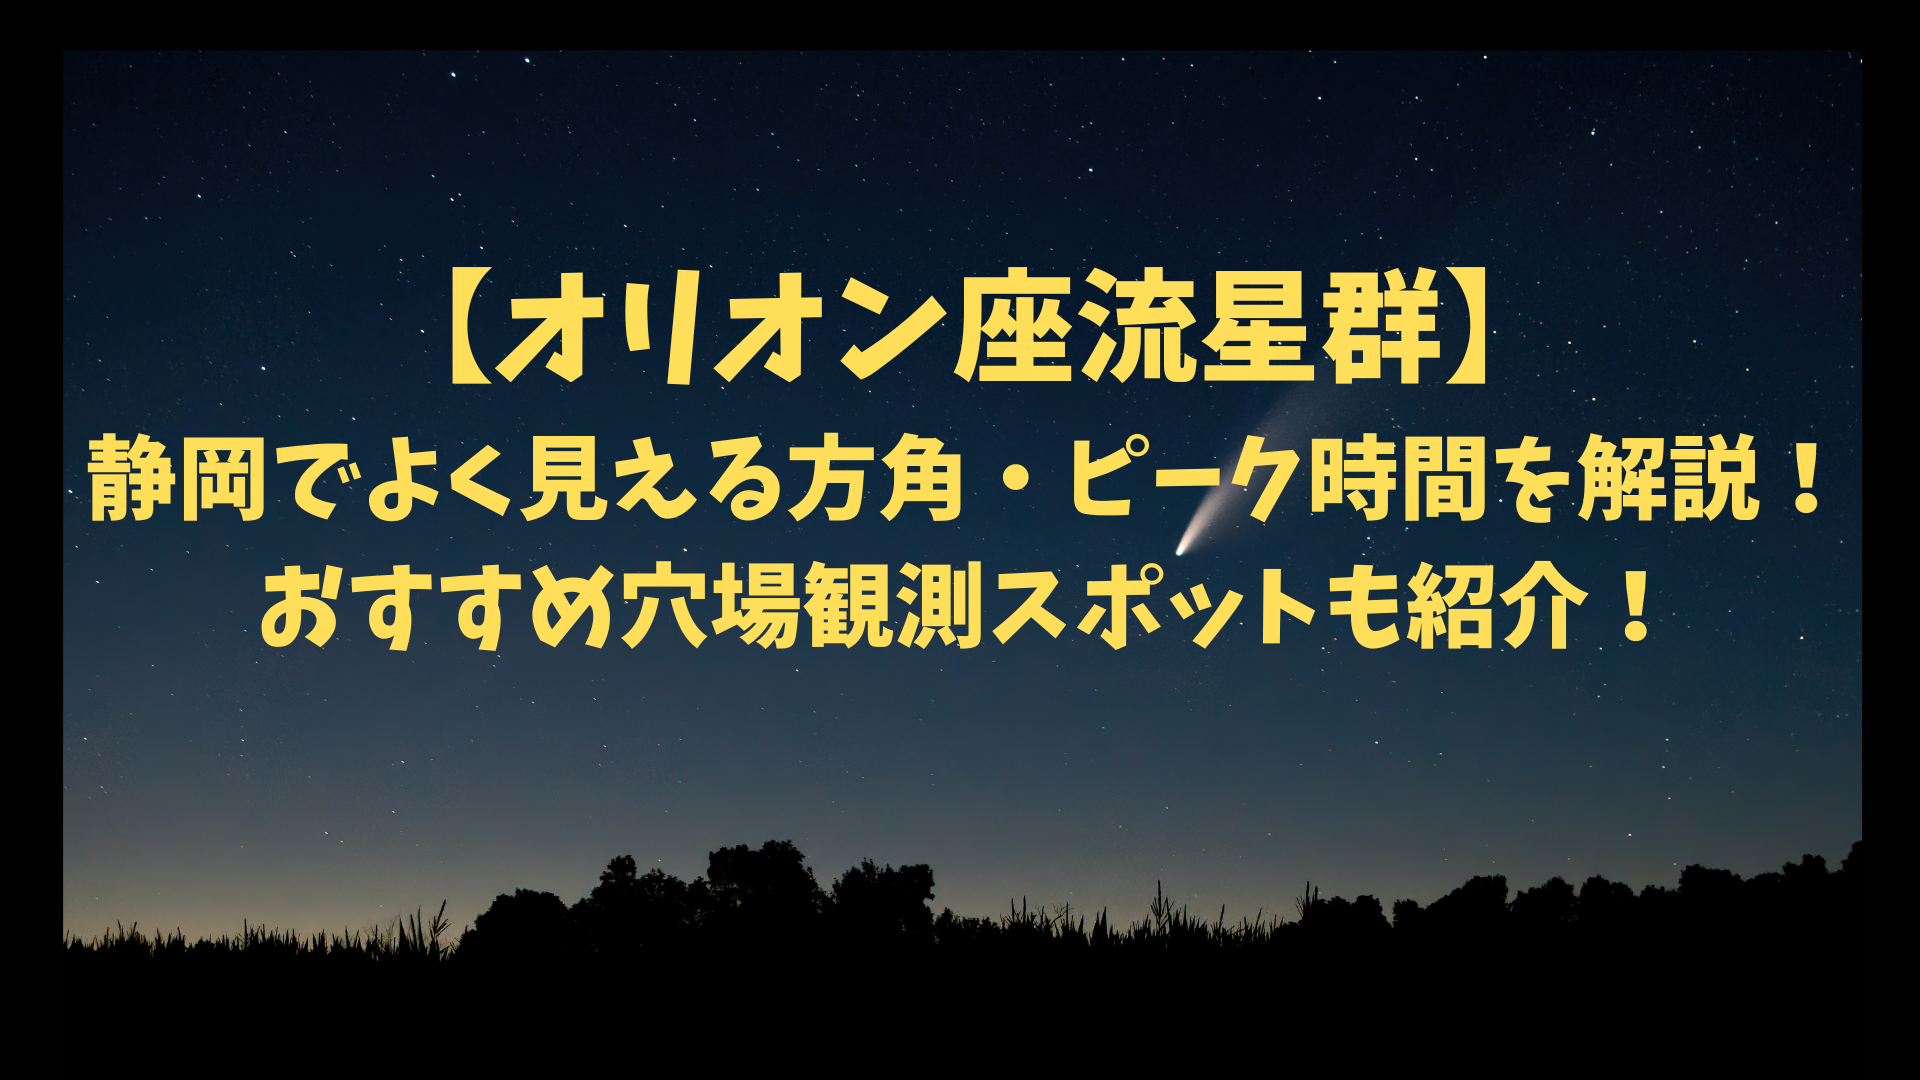 【オリオン座流星群】 静岡でよく見える方角・ピーク時間を解説！ おすすめ穴場観測スポットも紹介！のアイキャッチ画像